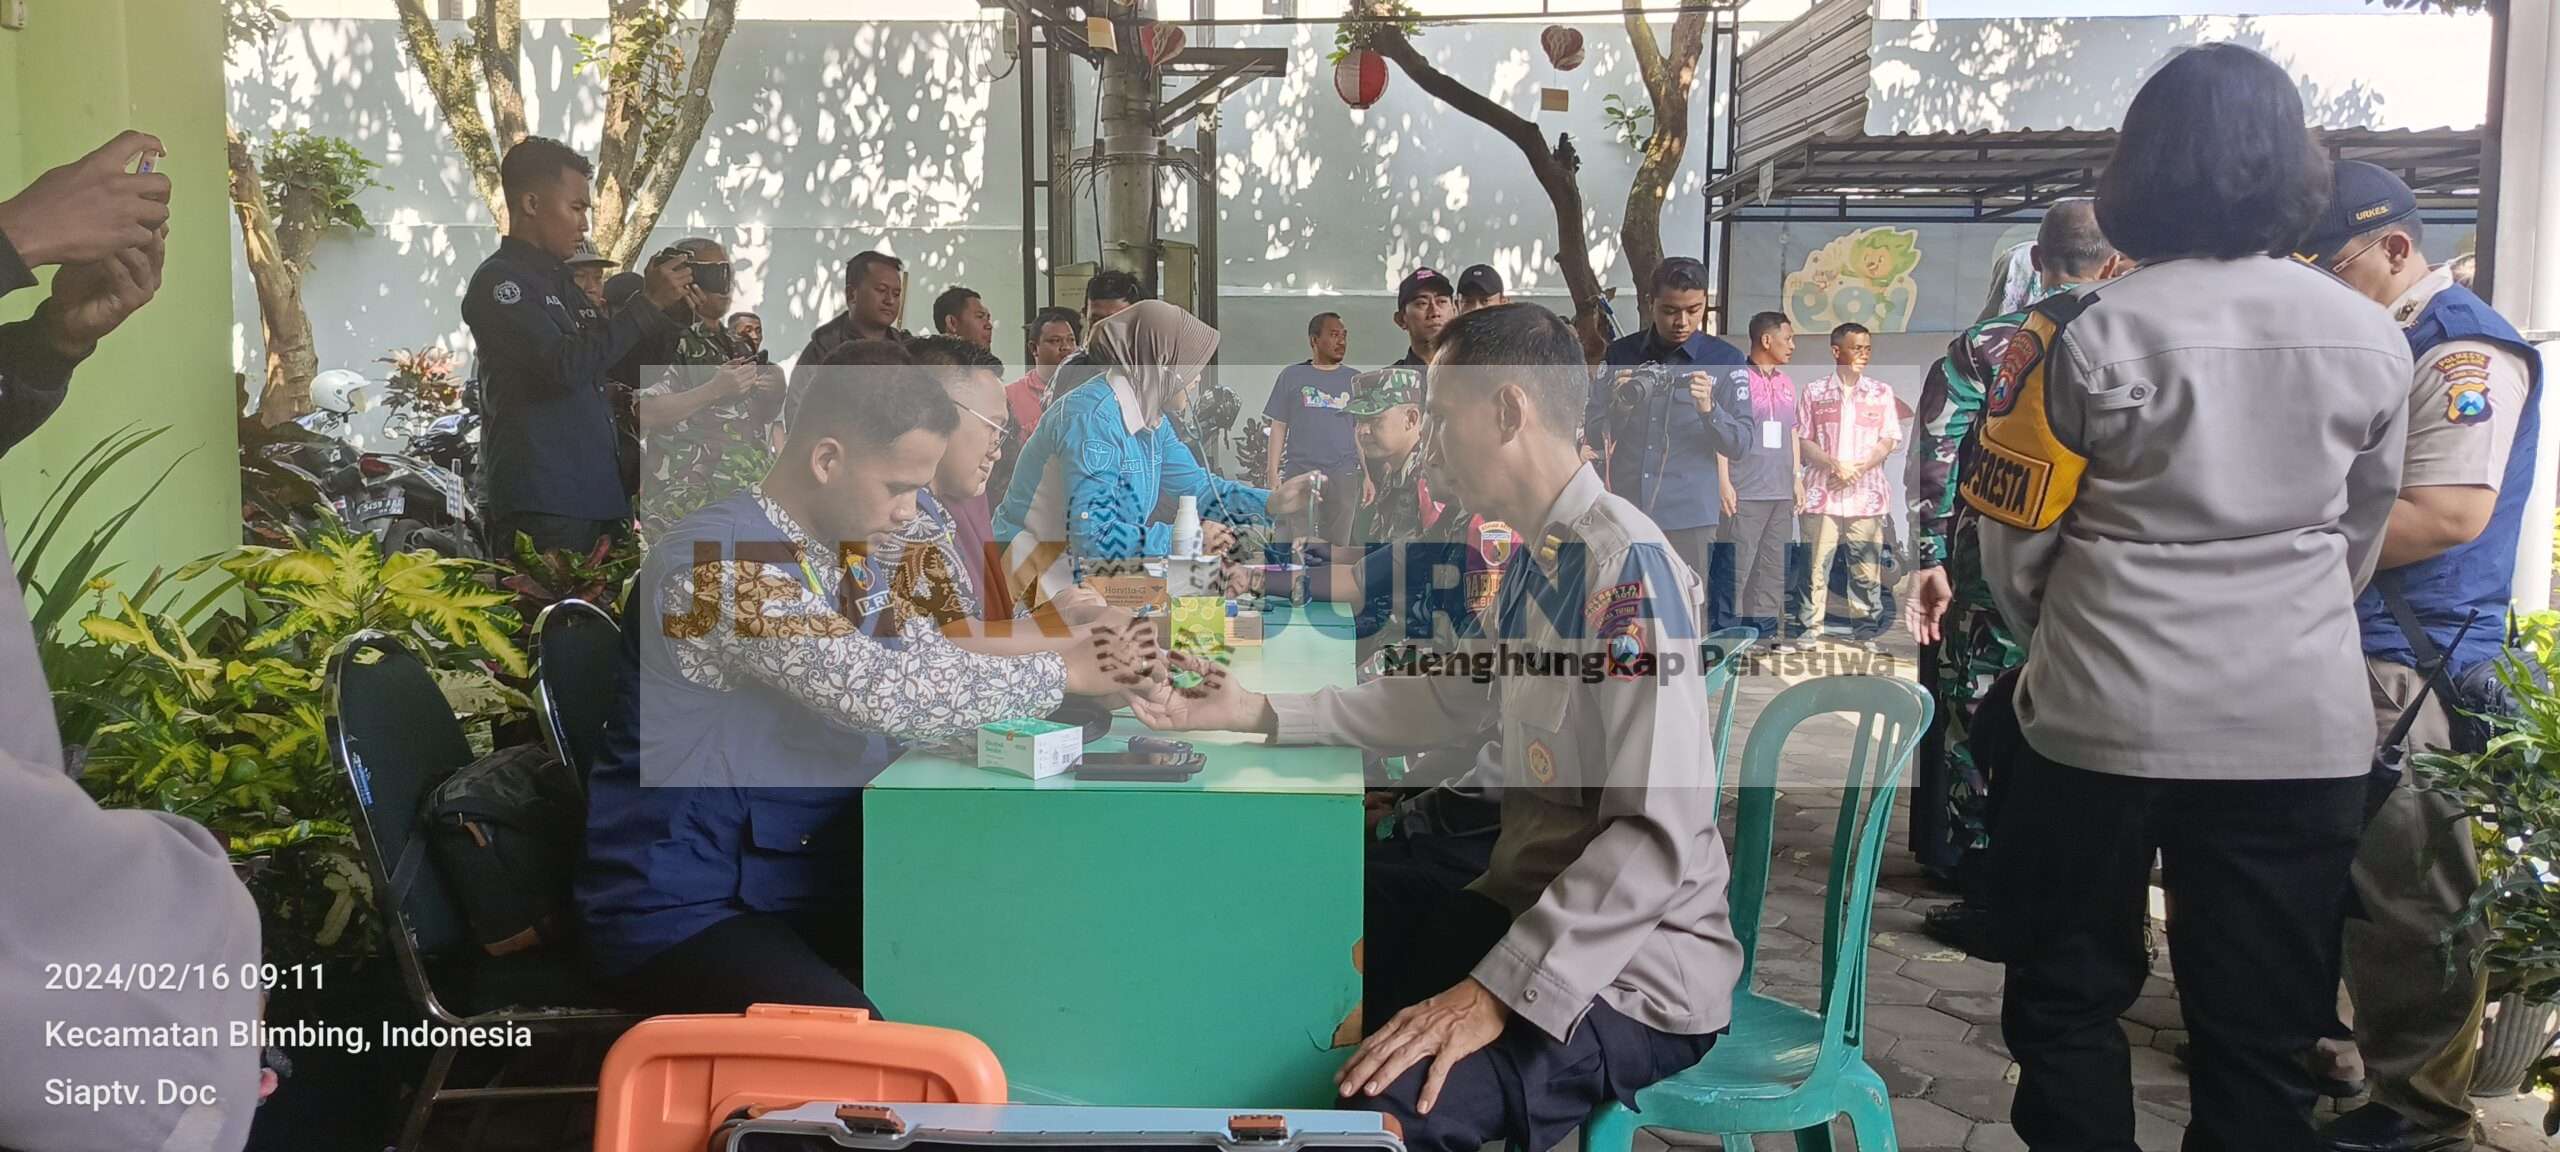 Polresta Malang Kota Menurunkan Nakes,Di Pergeseran Surat Suara Kecamatan Blimbing